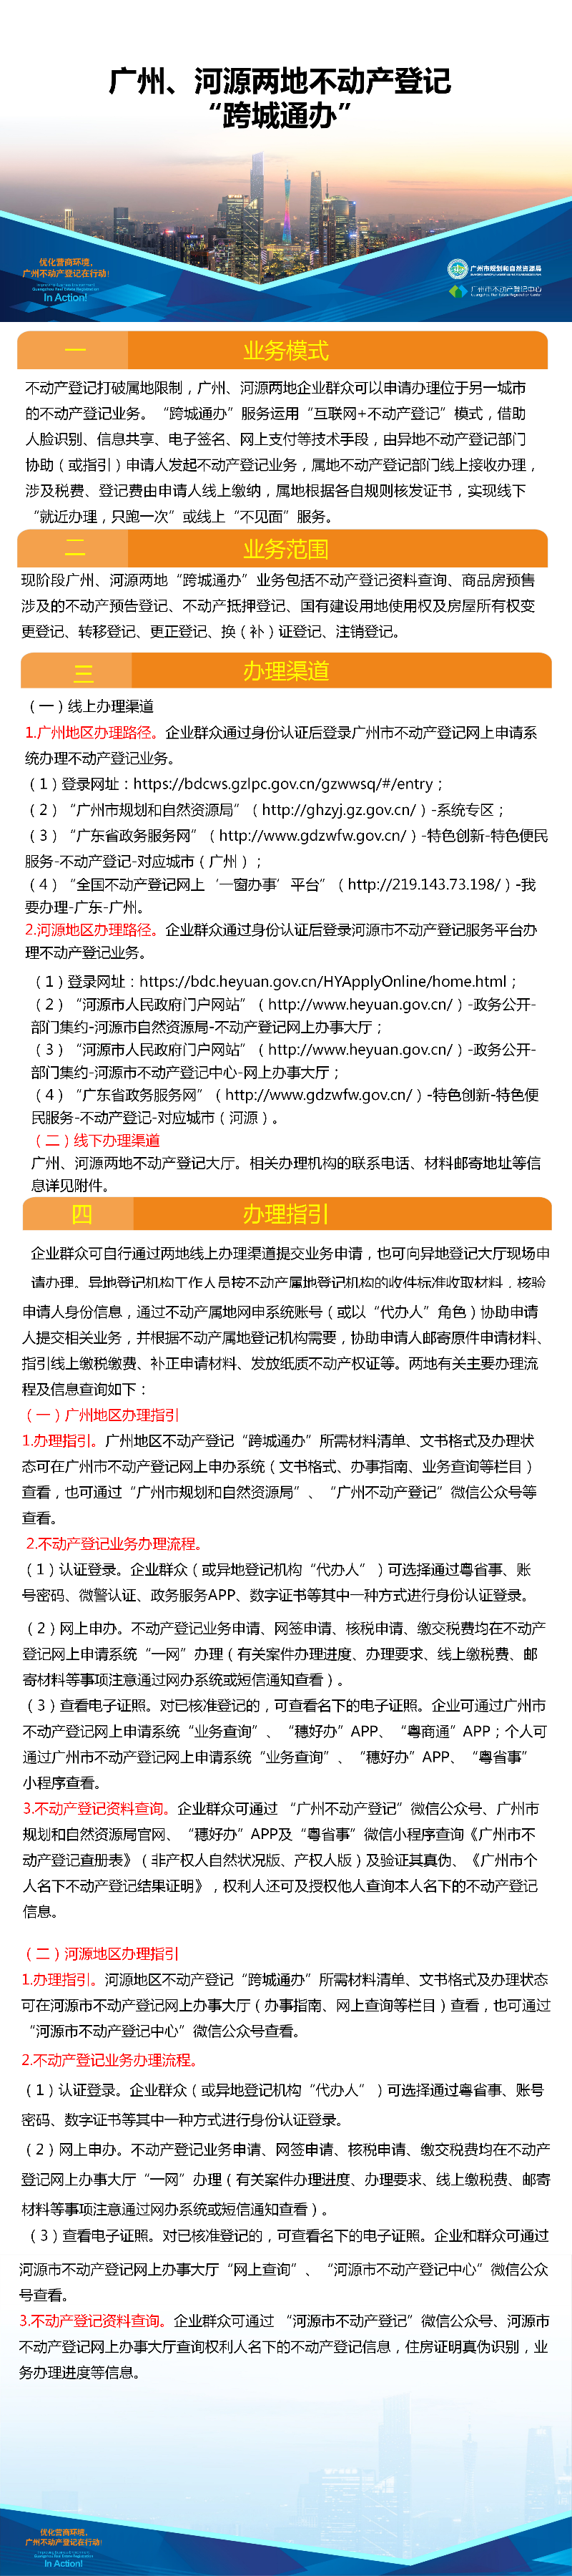 一图读懂-广州、河源两地不动产登记业务“跨城通办”.png